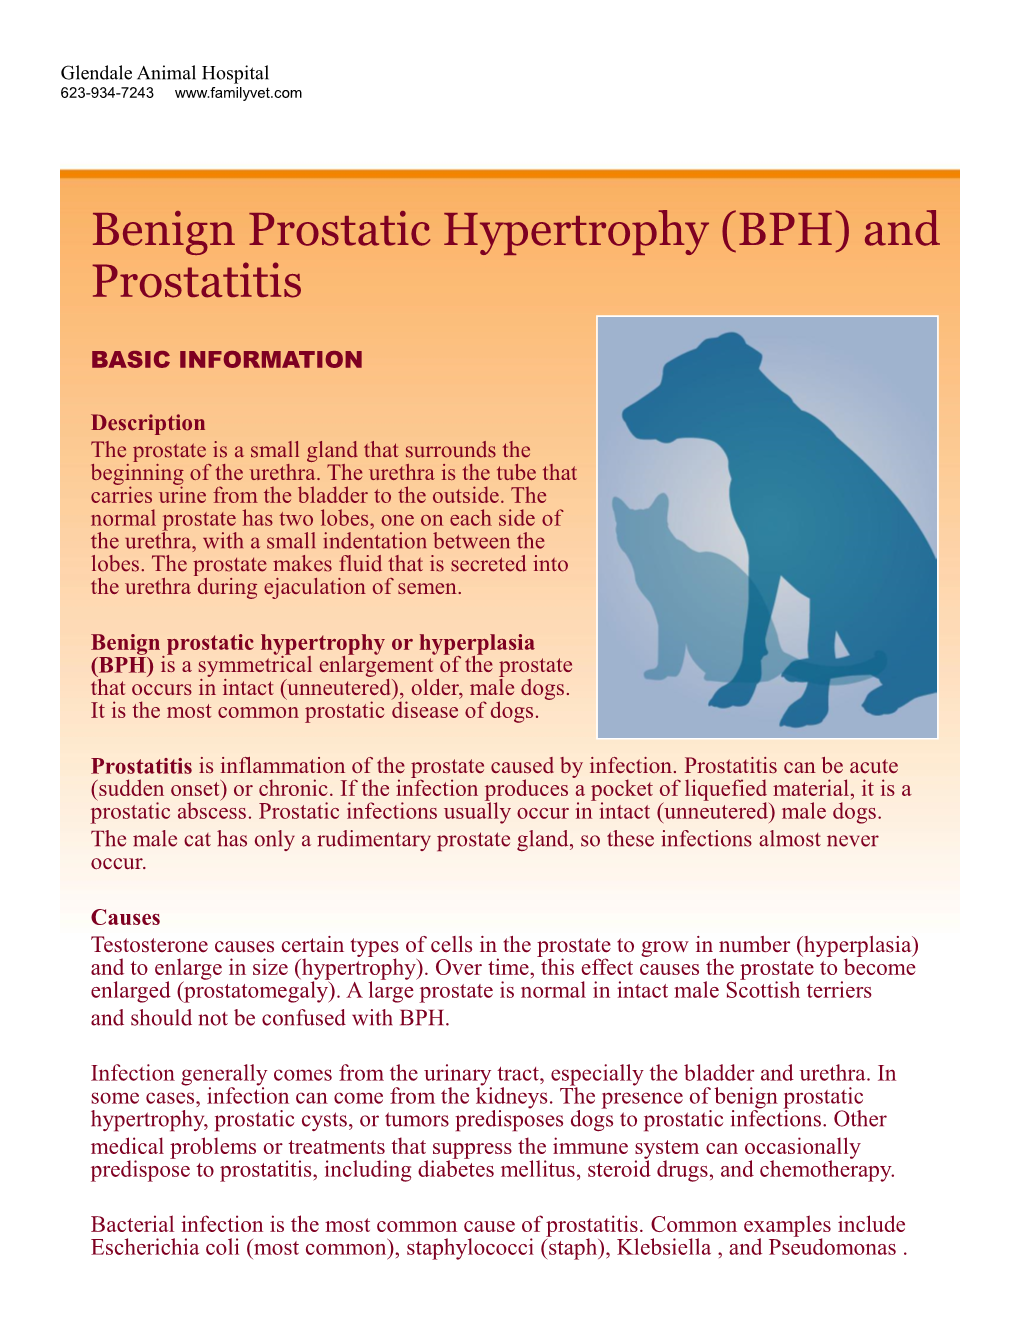 Benign Prostatic Hypertrophy (BPH) and Prostatitis